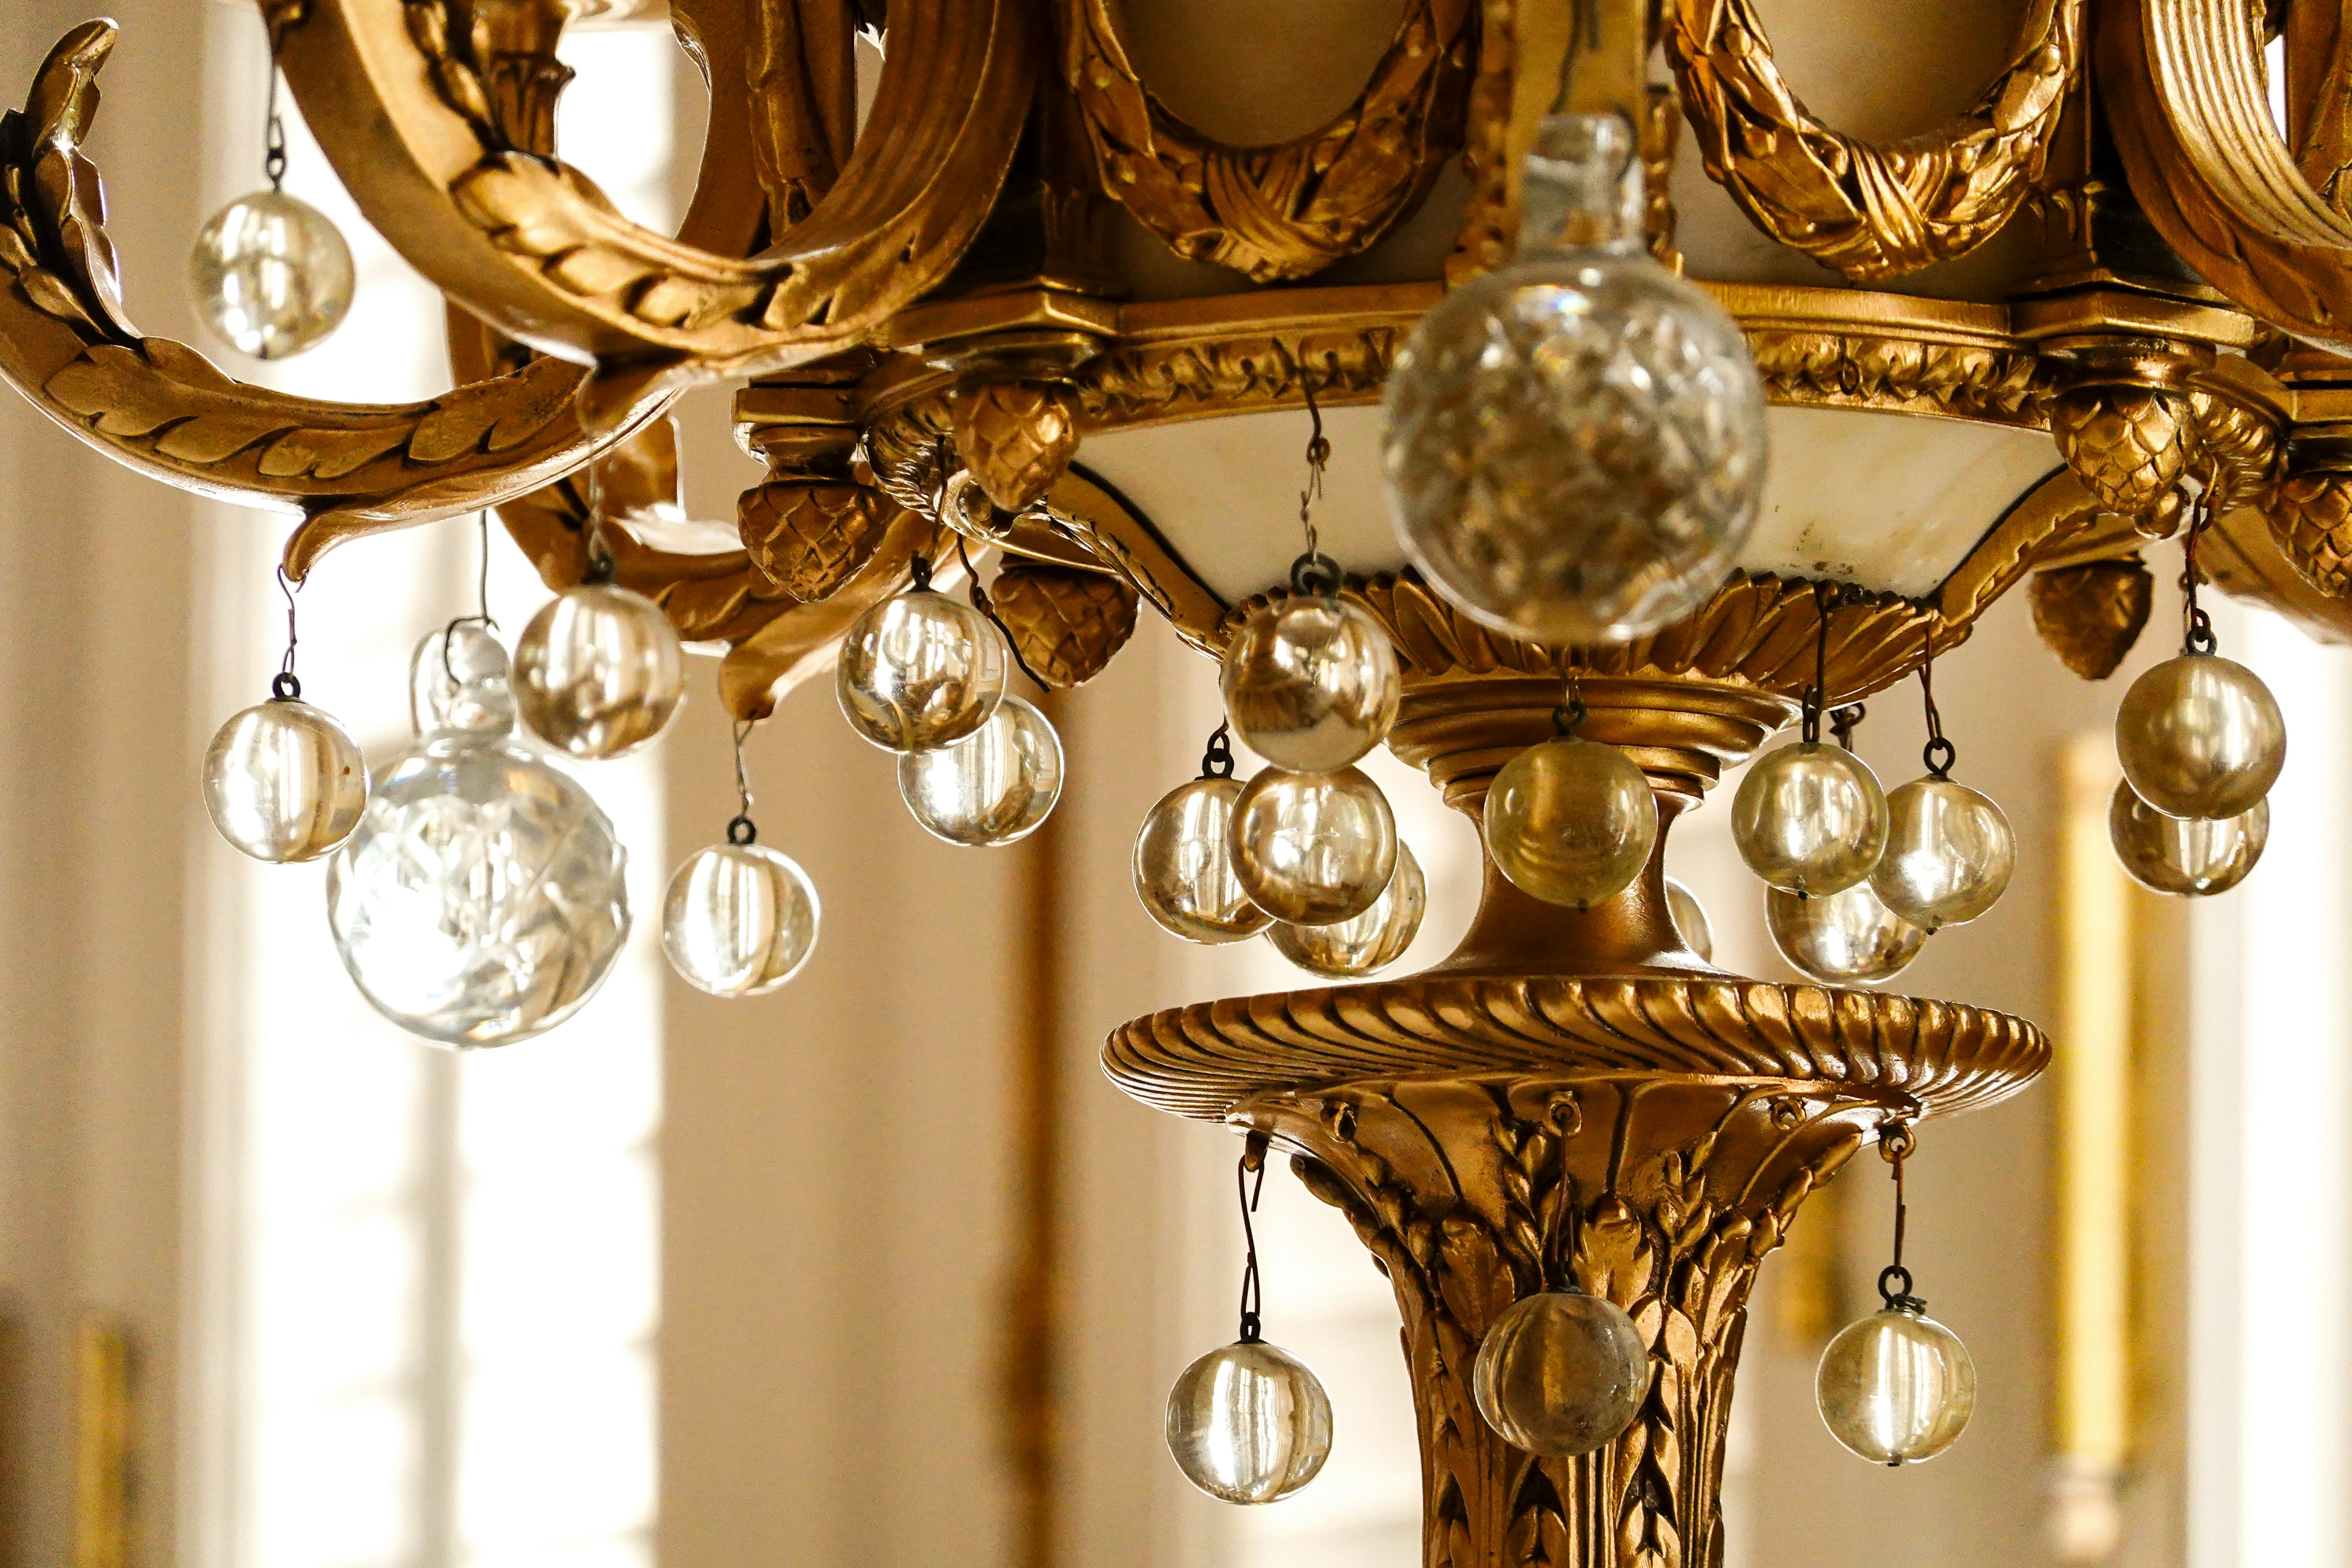 gold and white chandelier turned on in tilt shift lens